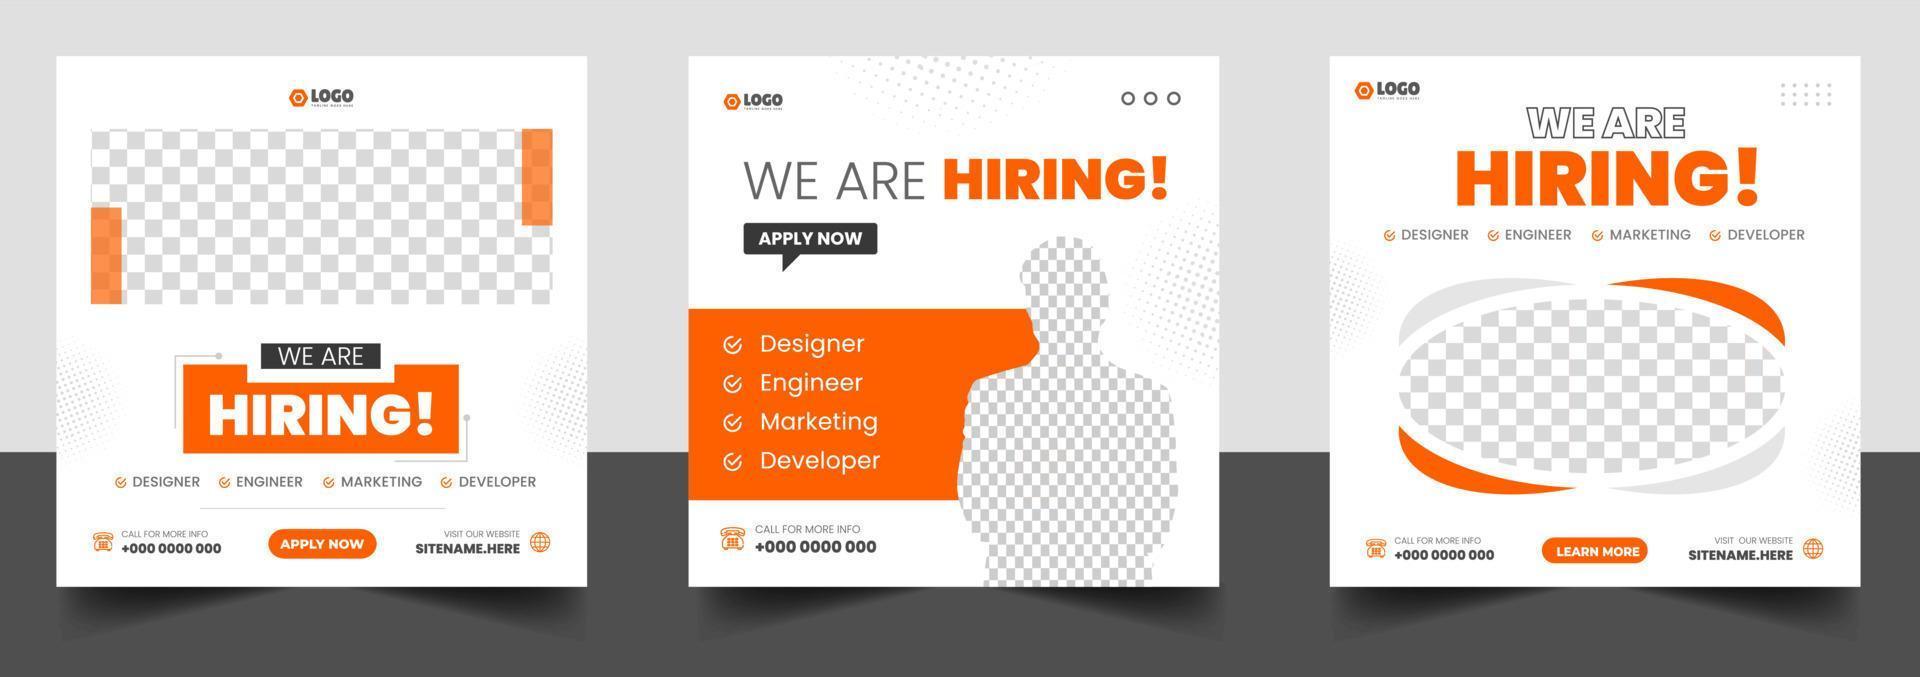 stiamo assumendo un modello di progettazione di banner post sui social media di posti di lavoro con colore arancione. stiamo assumendo un design di banner web quadrato per offerte di lavoro. vettore